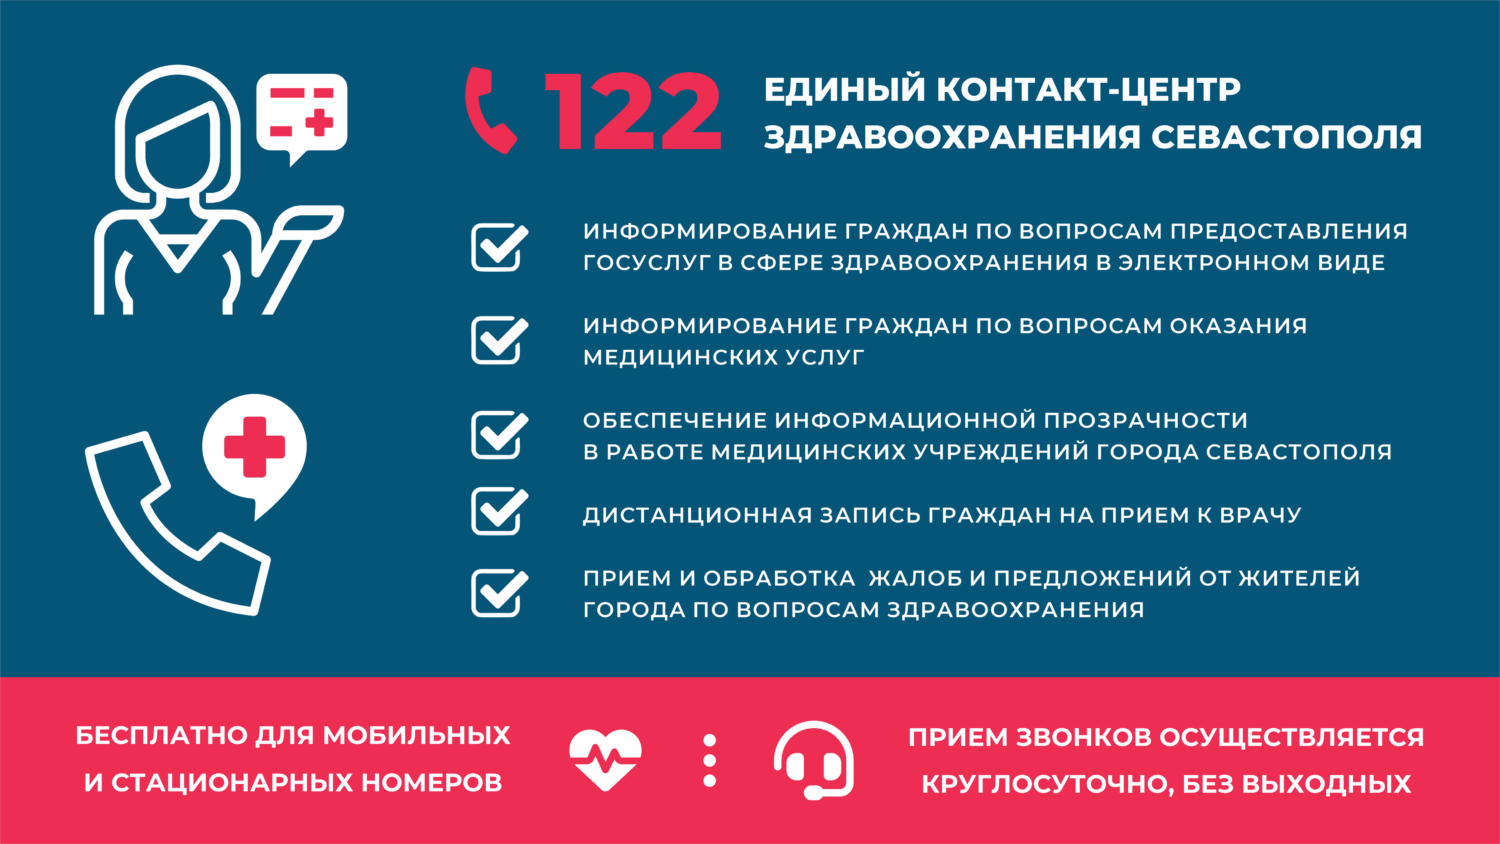 122 - единый контакт-центр здравоохранения Севастополя